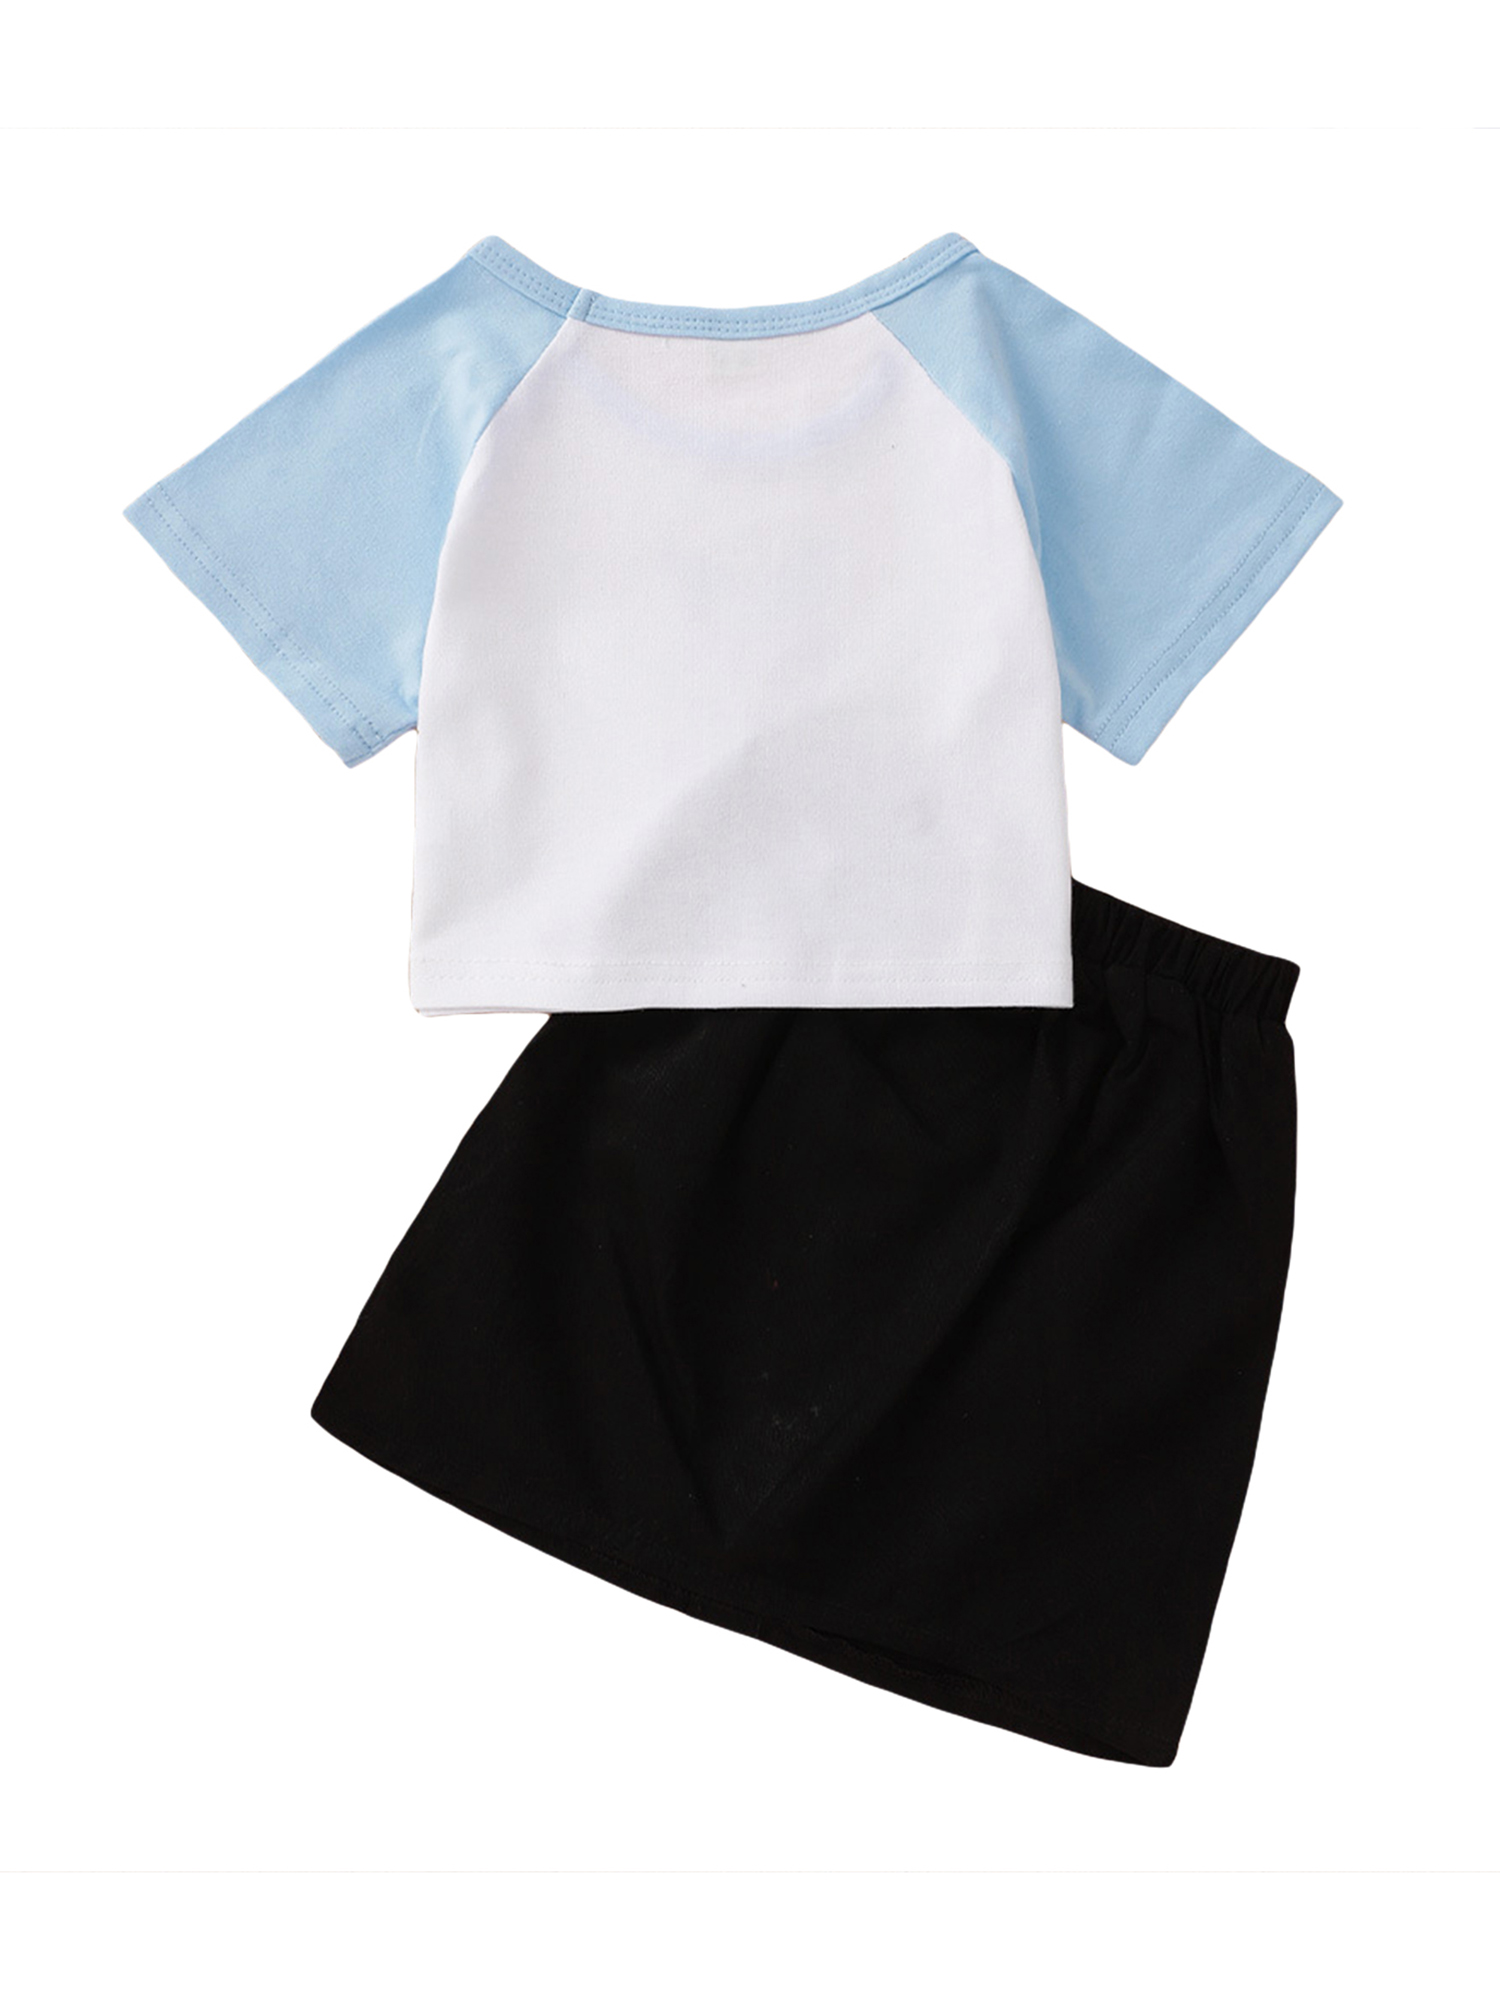 hirigin Kids Girls 2-piece Outfit Set Butterfly Print T-shirt+Skirt Set - image 3 of 9